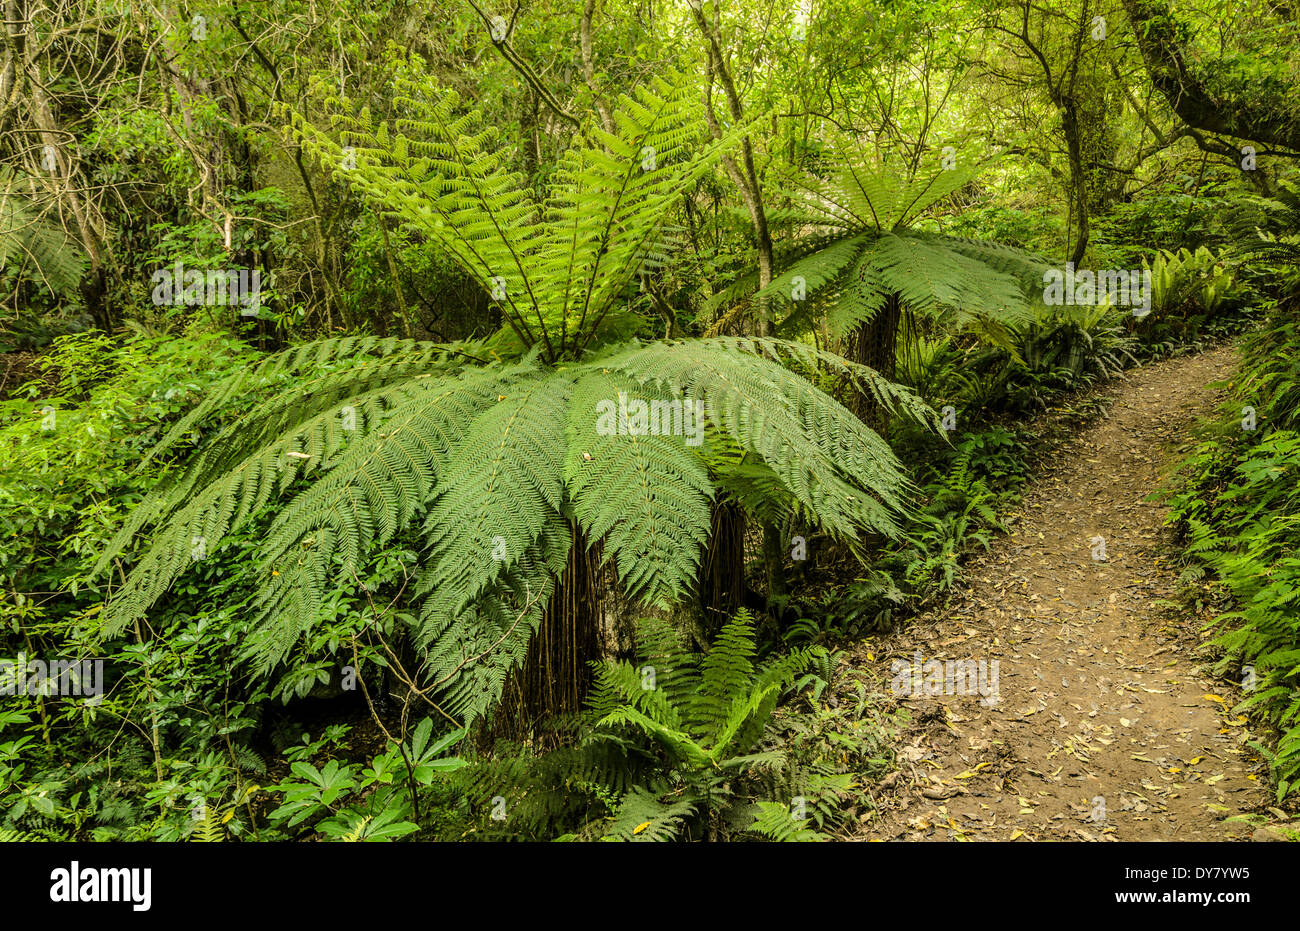 Les fougères arborescentes (Cyatheales) le long d'un sentier de randonnée à travers la forêt primaire, l'Île du Nord, Nouvelle-Zélande Banque D'Images